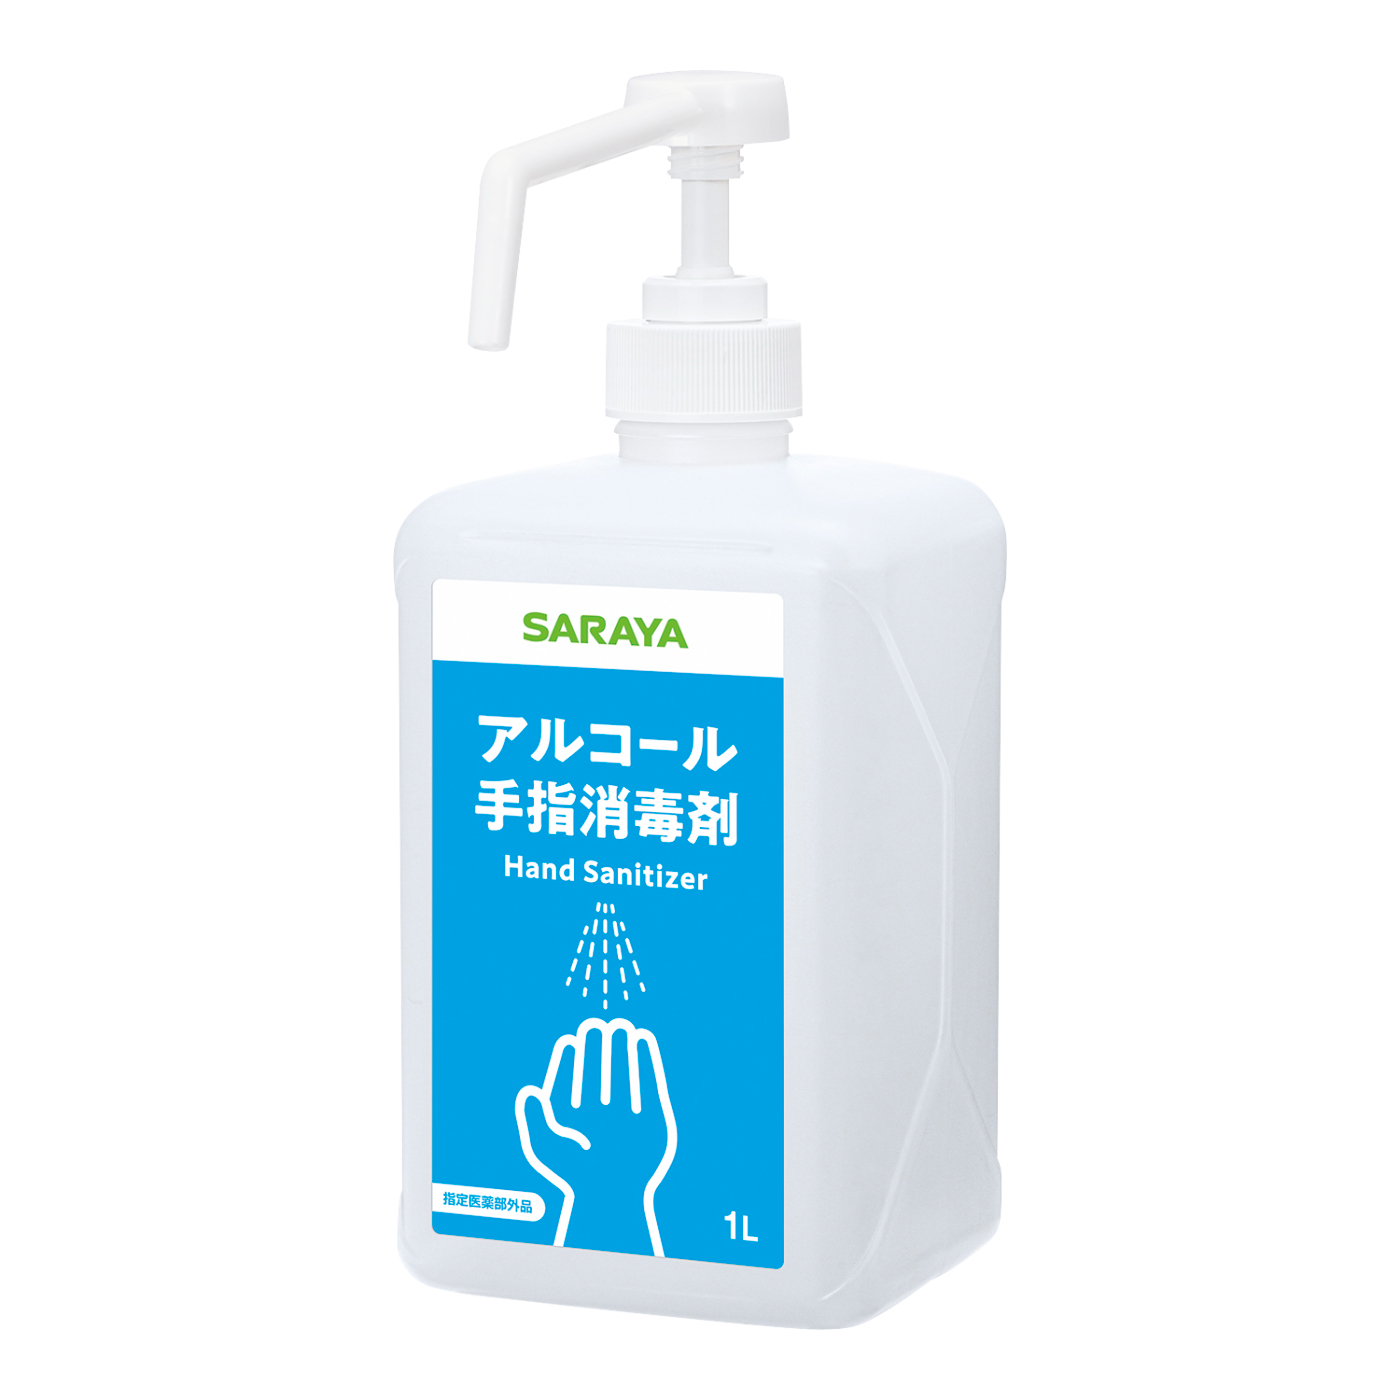 手指消毒剤用1Lポンプボトル | 手指消毒剤用1Lポンプボトル | 製品情報